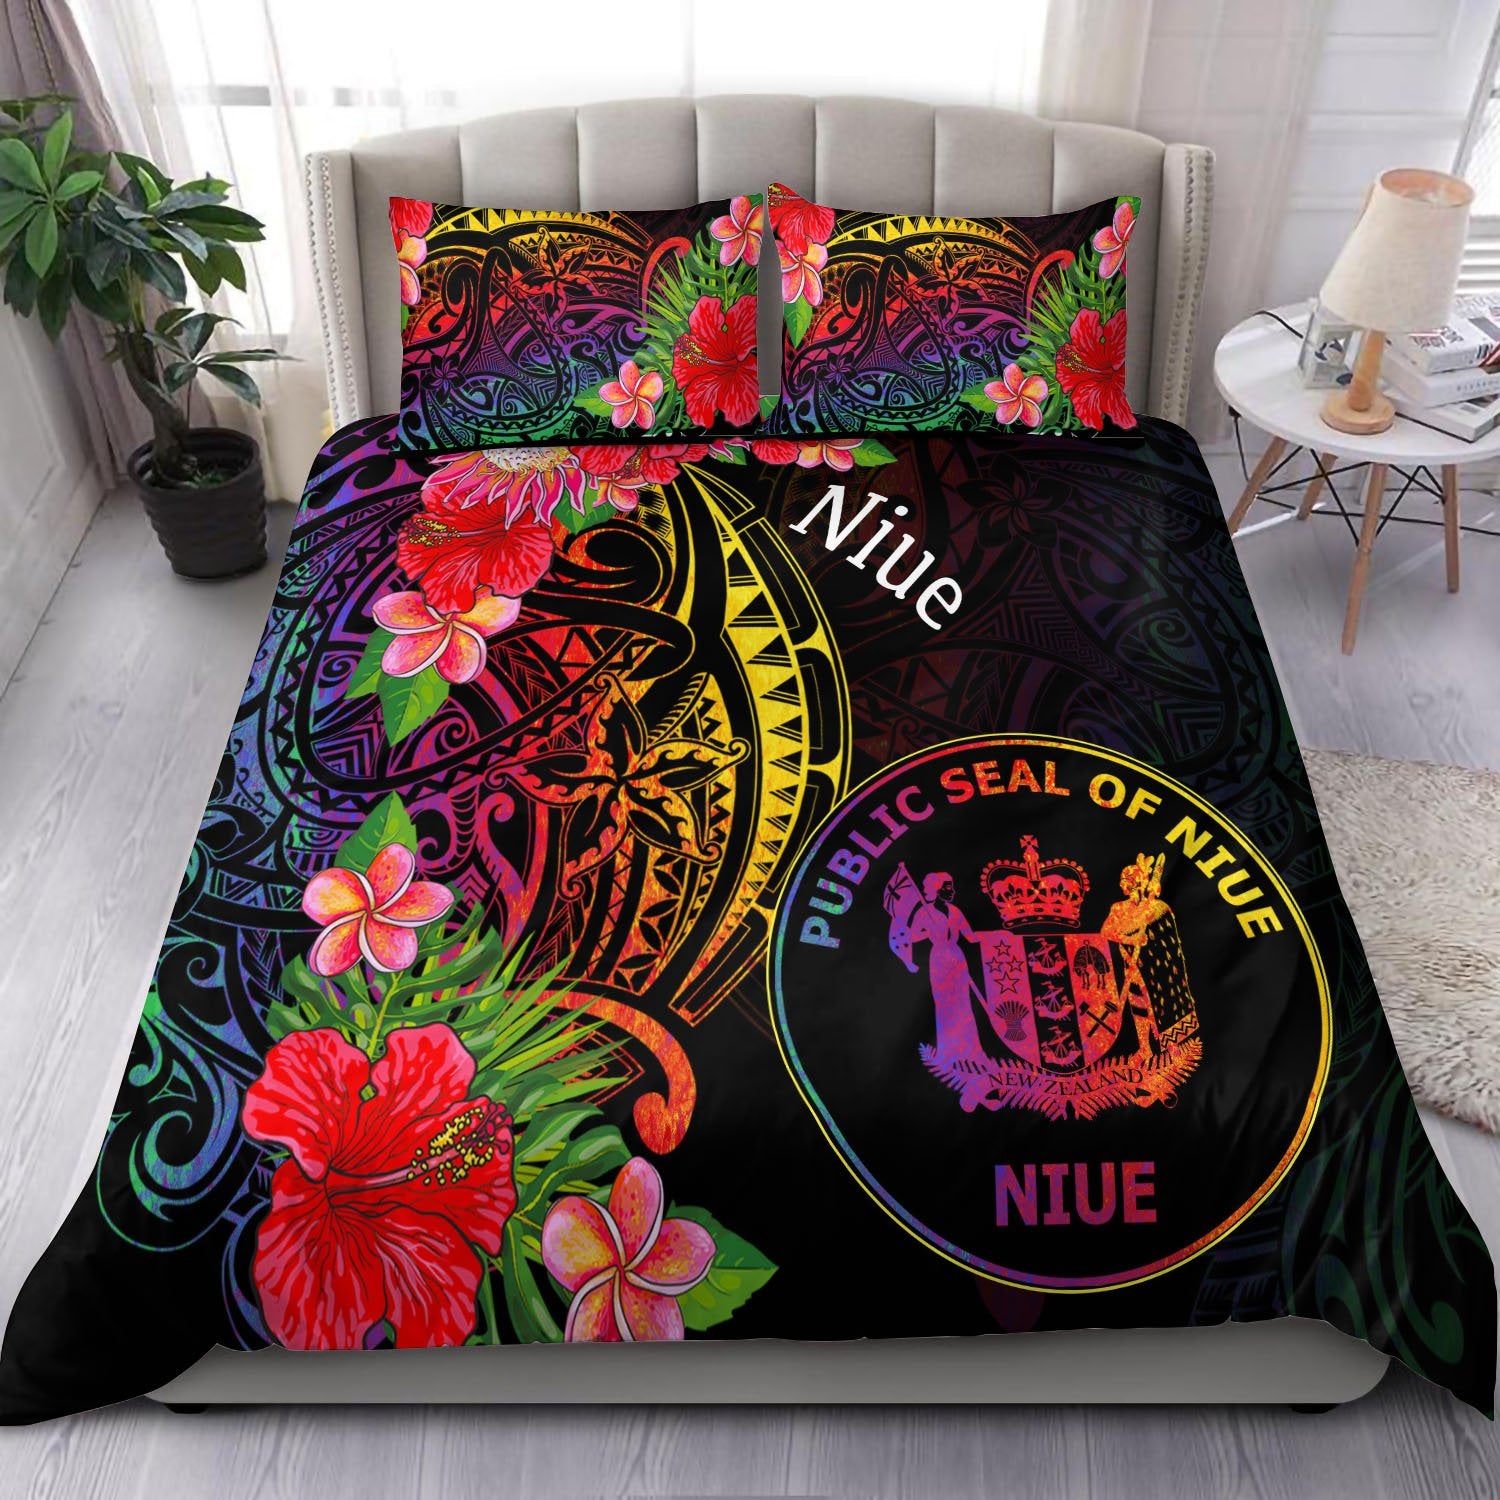 Niue Bedding Set - Tropical Hippie Style Black - Polynesian Pride